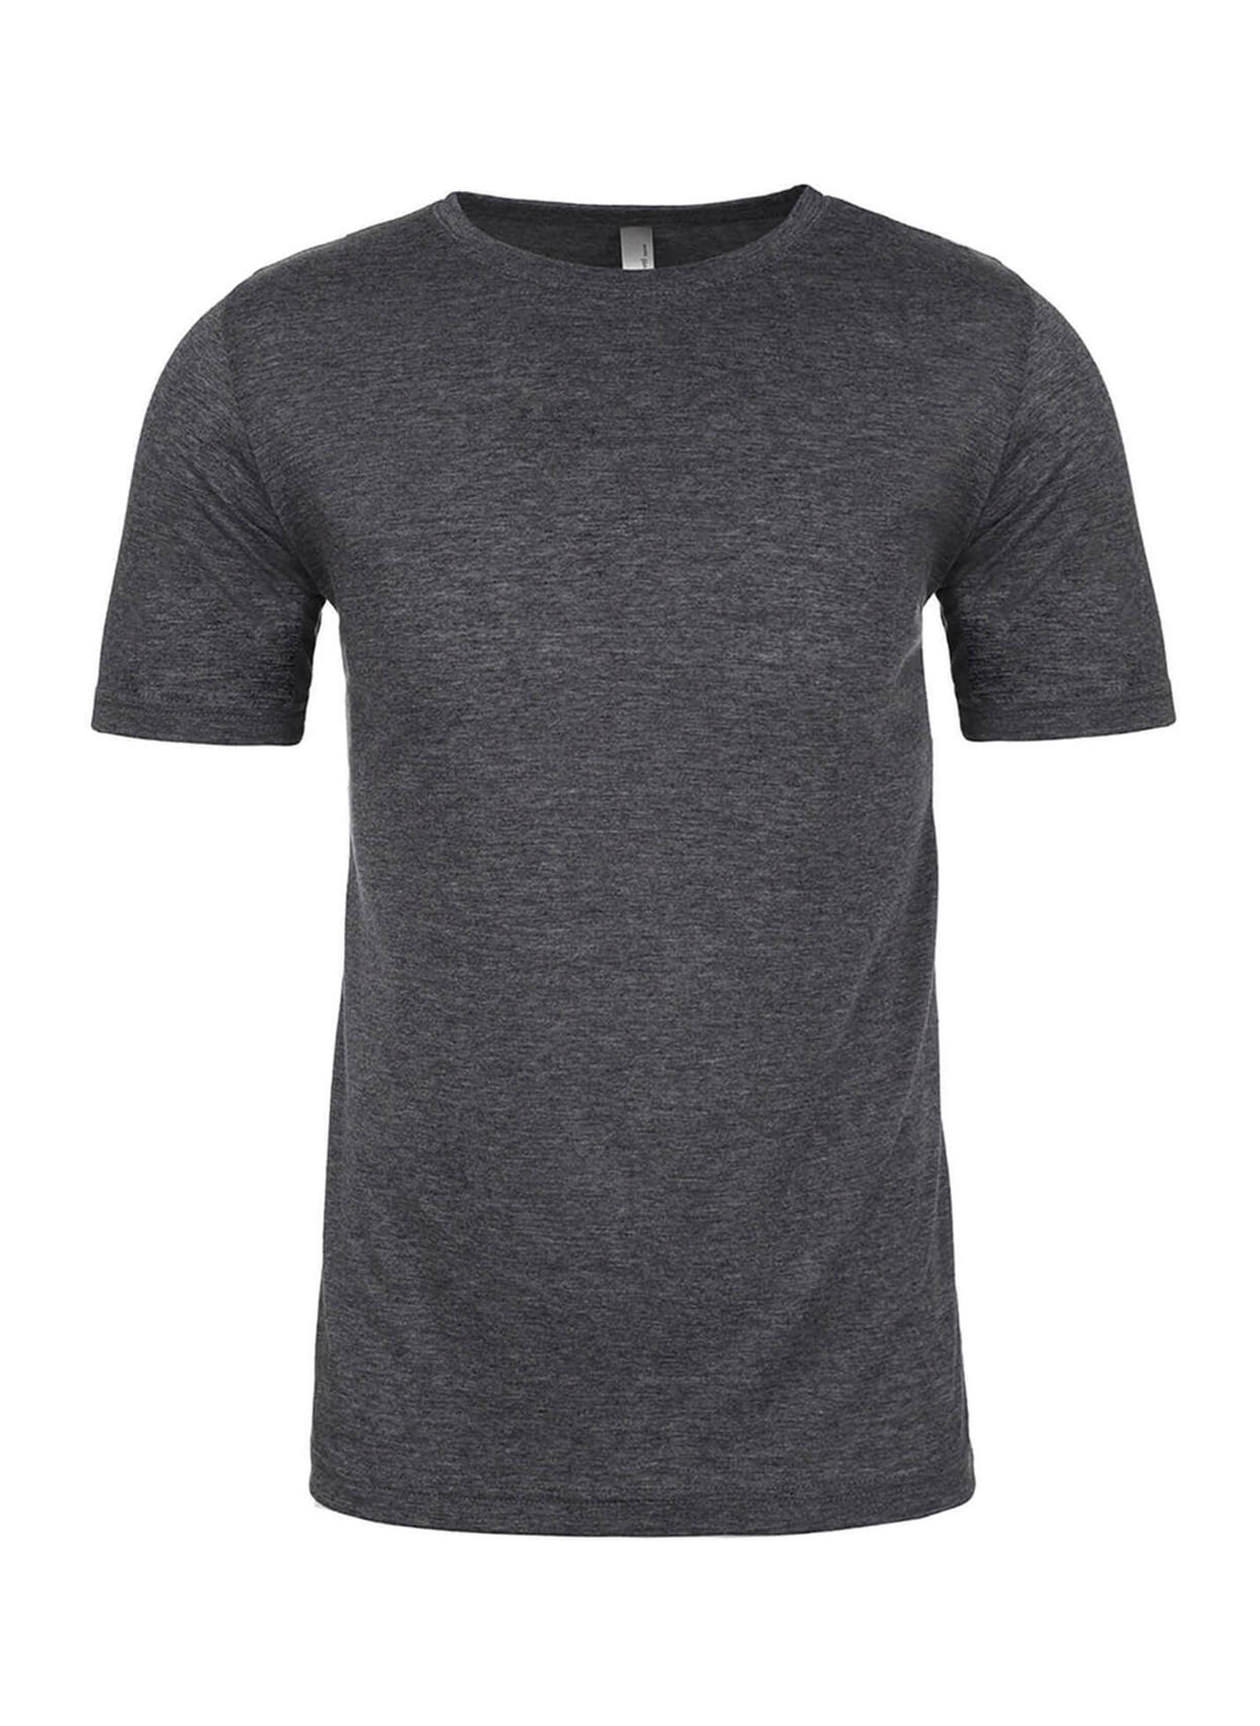 Next Level Men's Charcoal Unisex Poly/Cotton Crew T-Shirt